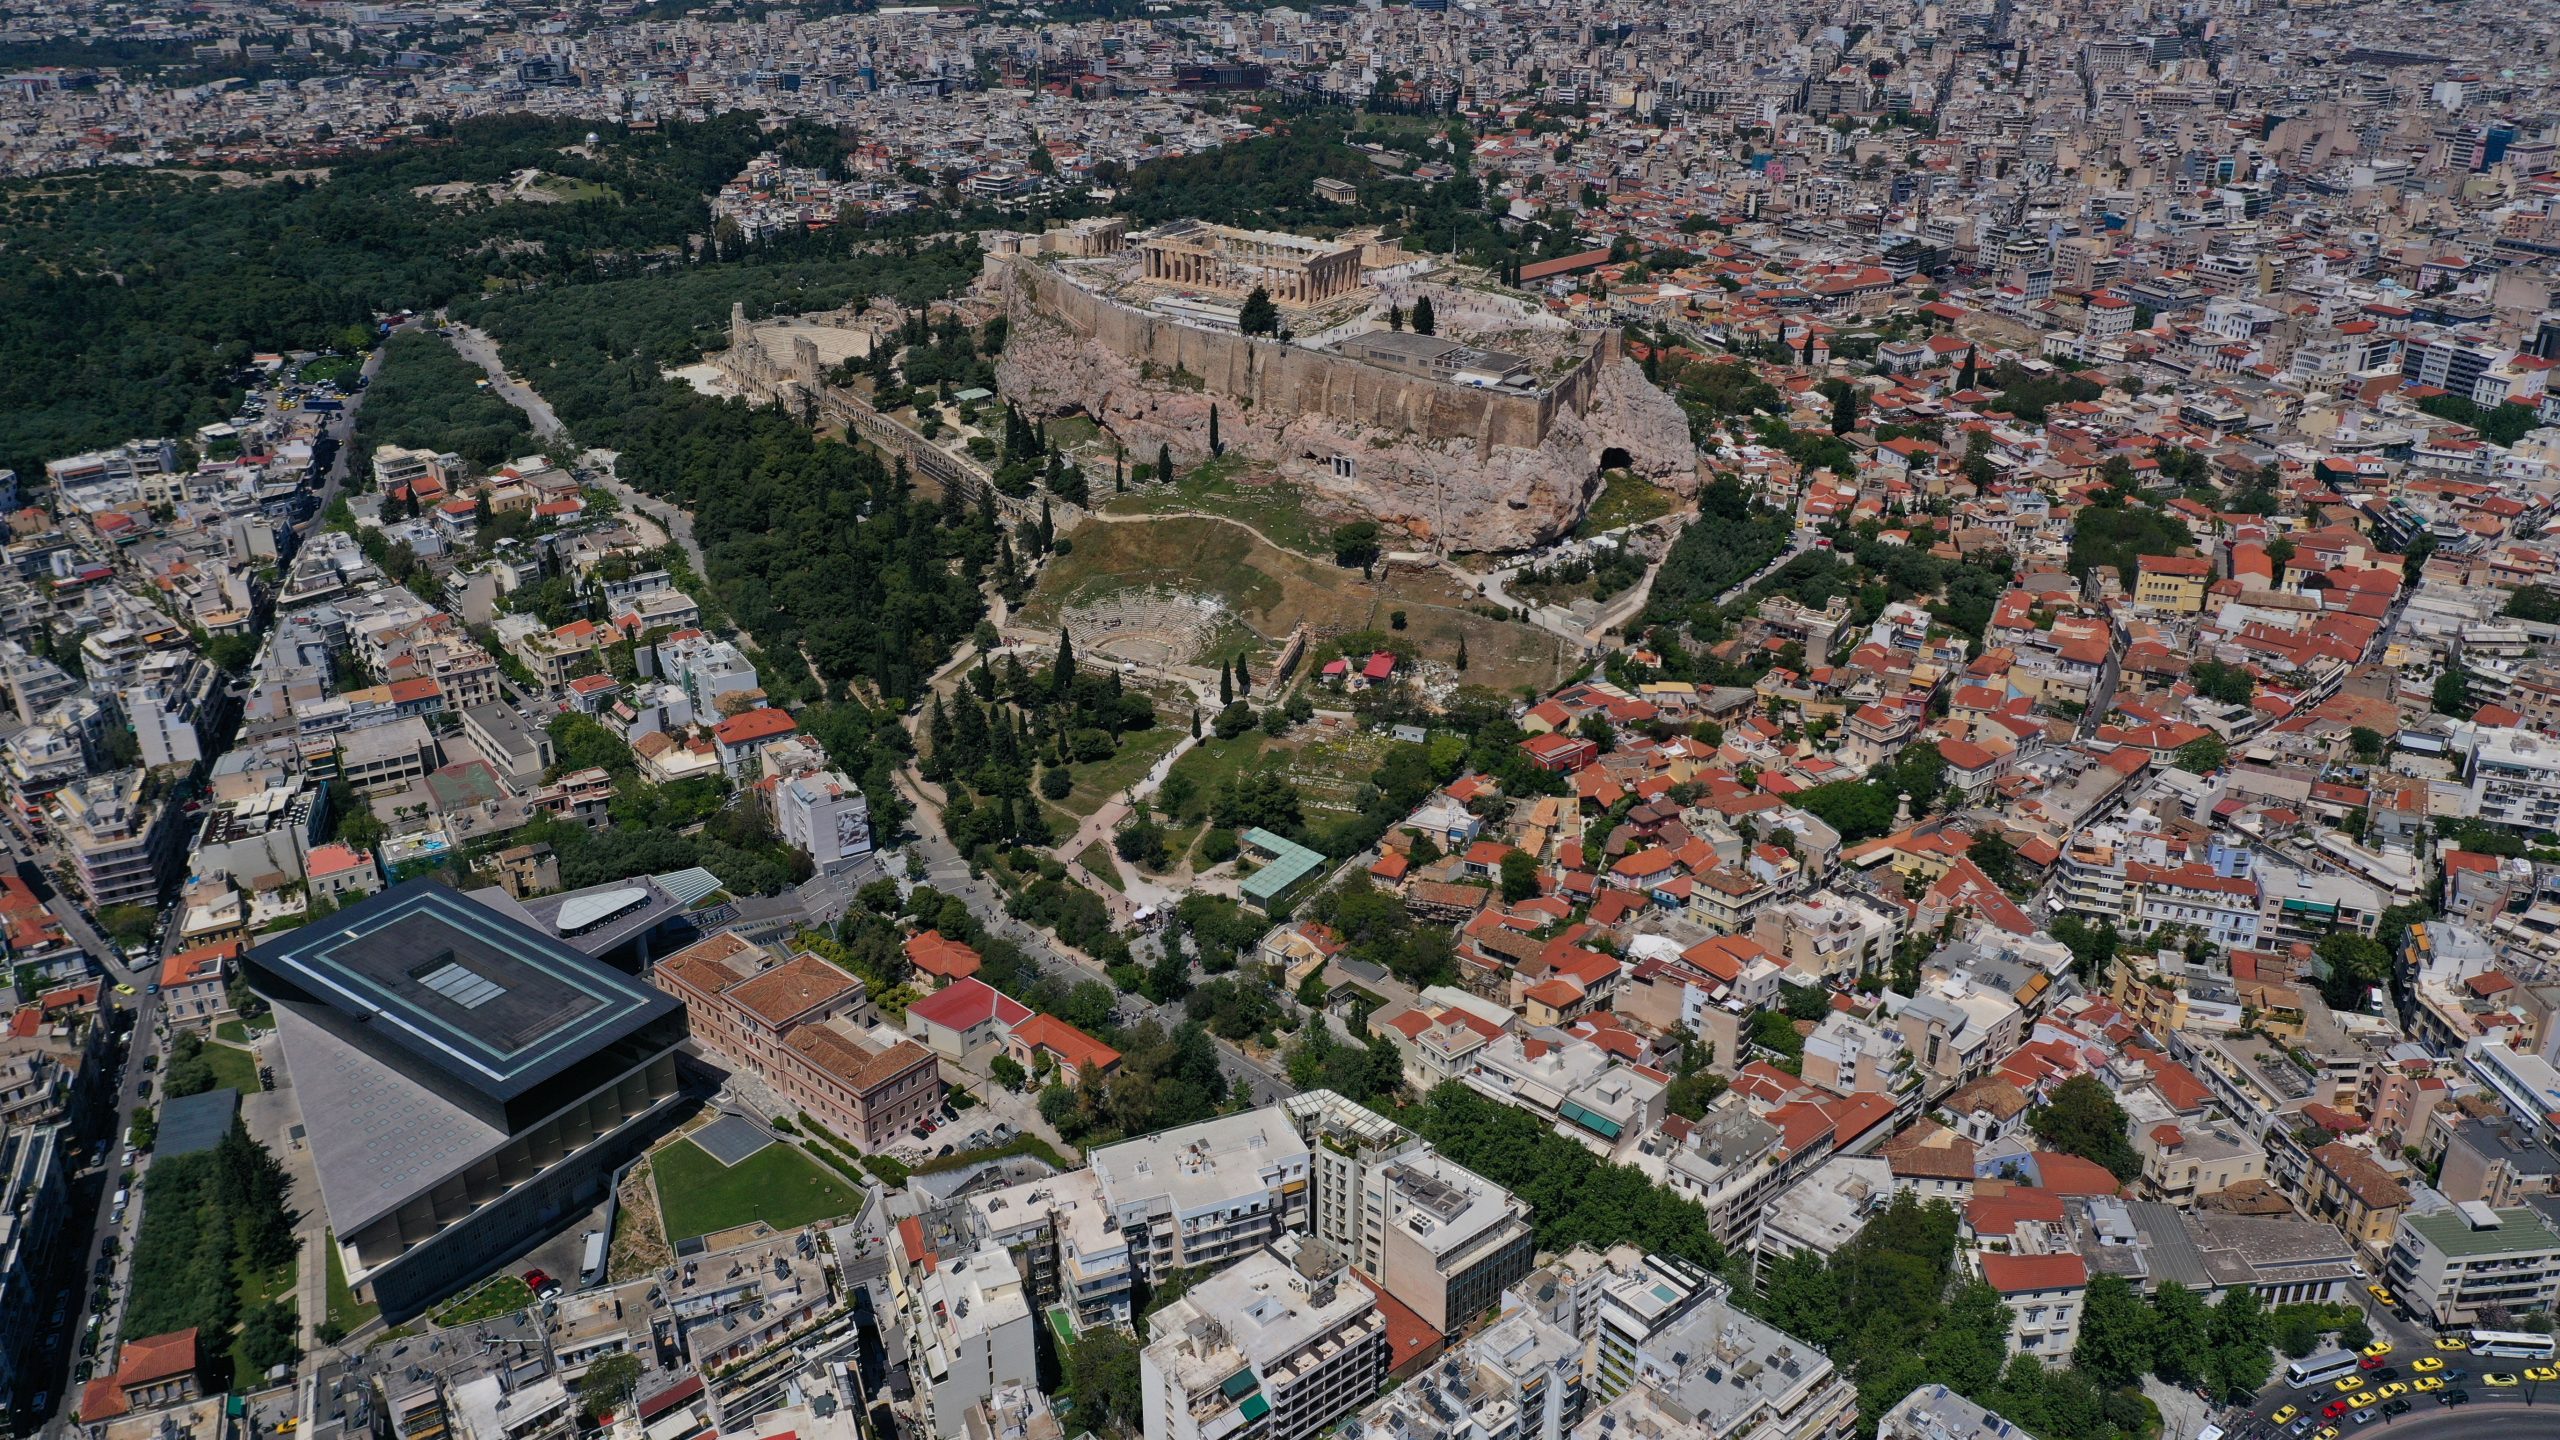 Διαμέρισμα στην Αθήνα πουλήθηκε σε Ελβετό επιχειρηματία για 18 εκατ. ευρώ